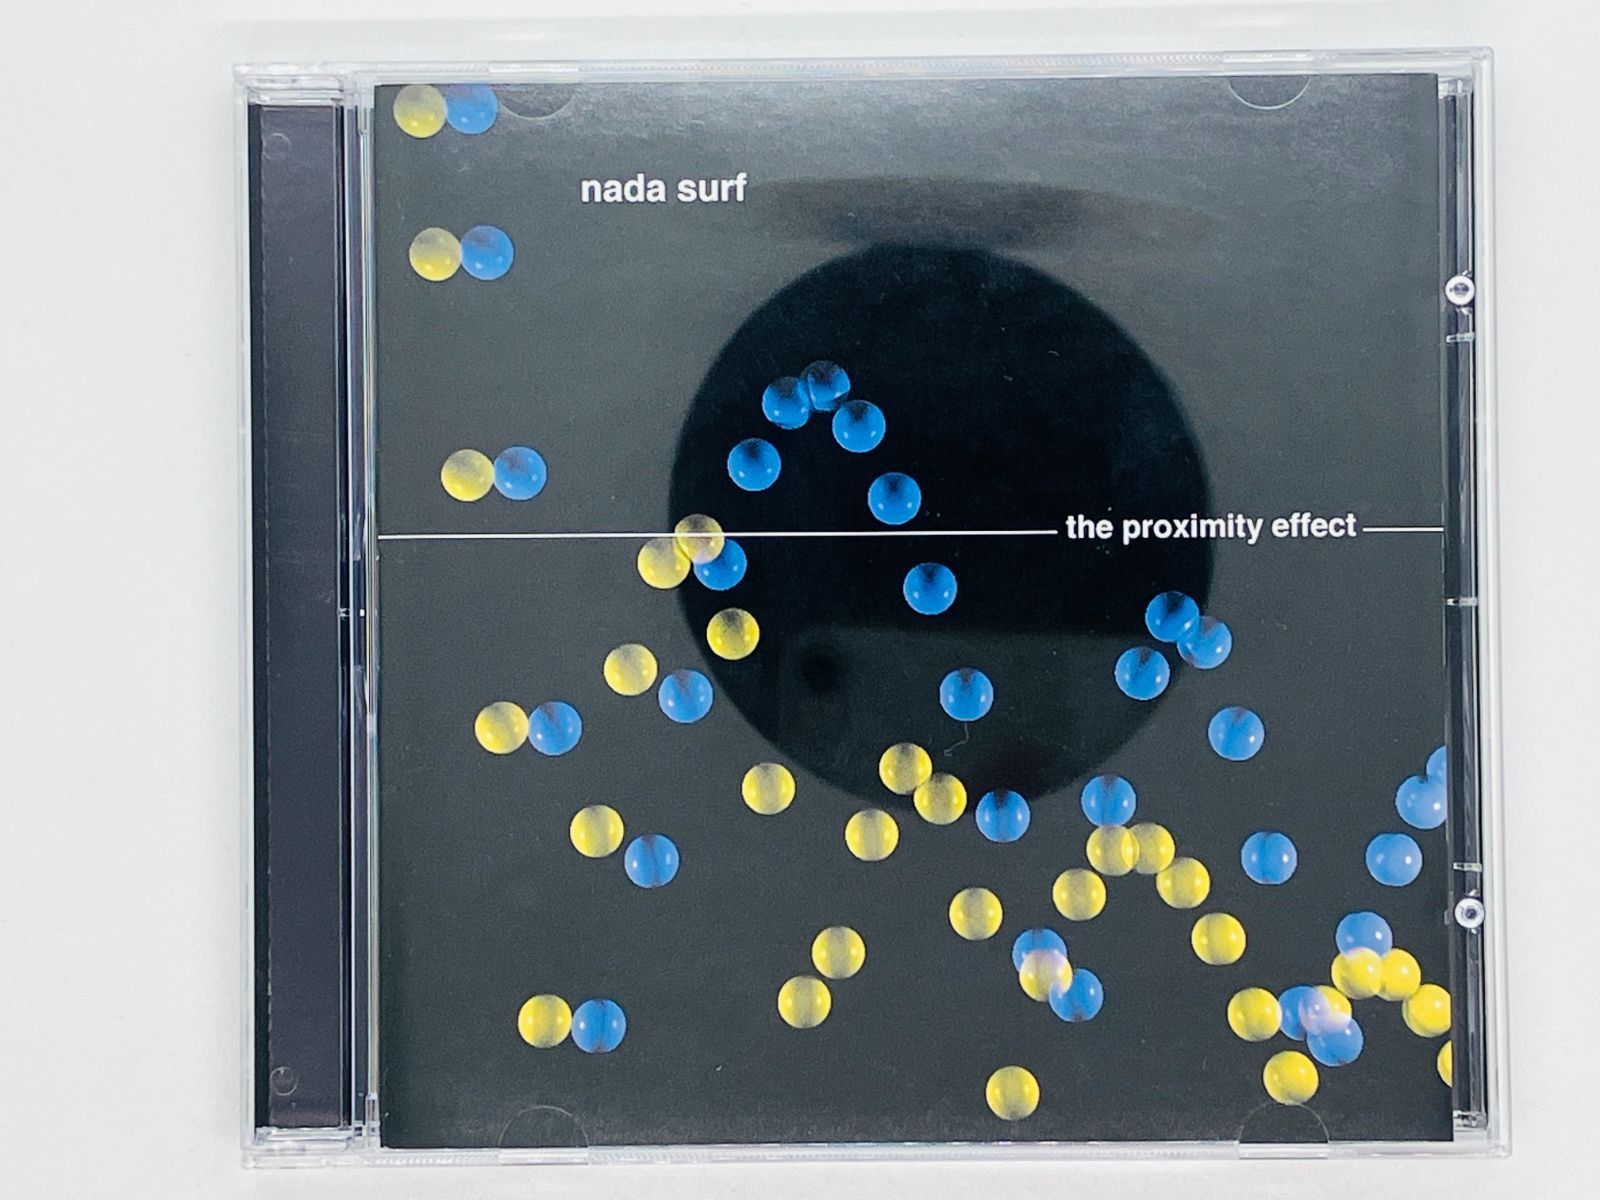 CD ナダ・サーフ NADA SURF / THE PROXIMITY EFFECT ザ・プロクシミティー・エフェクト / MARDEV 002 Y29